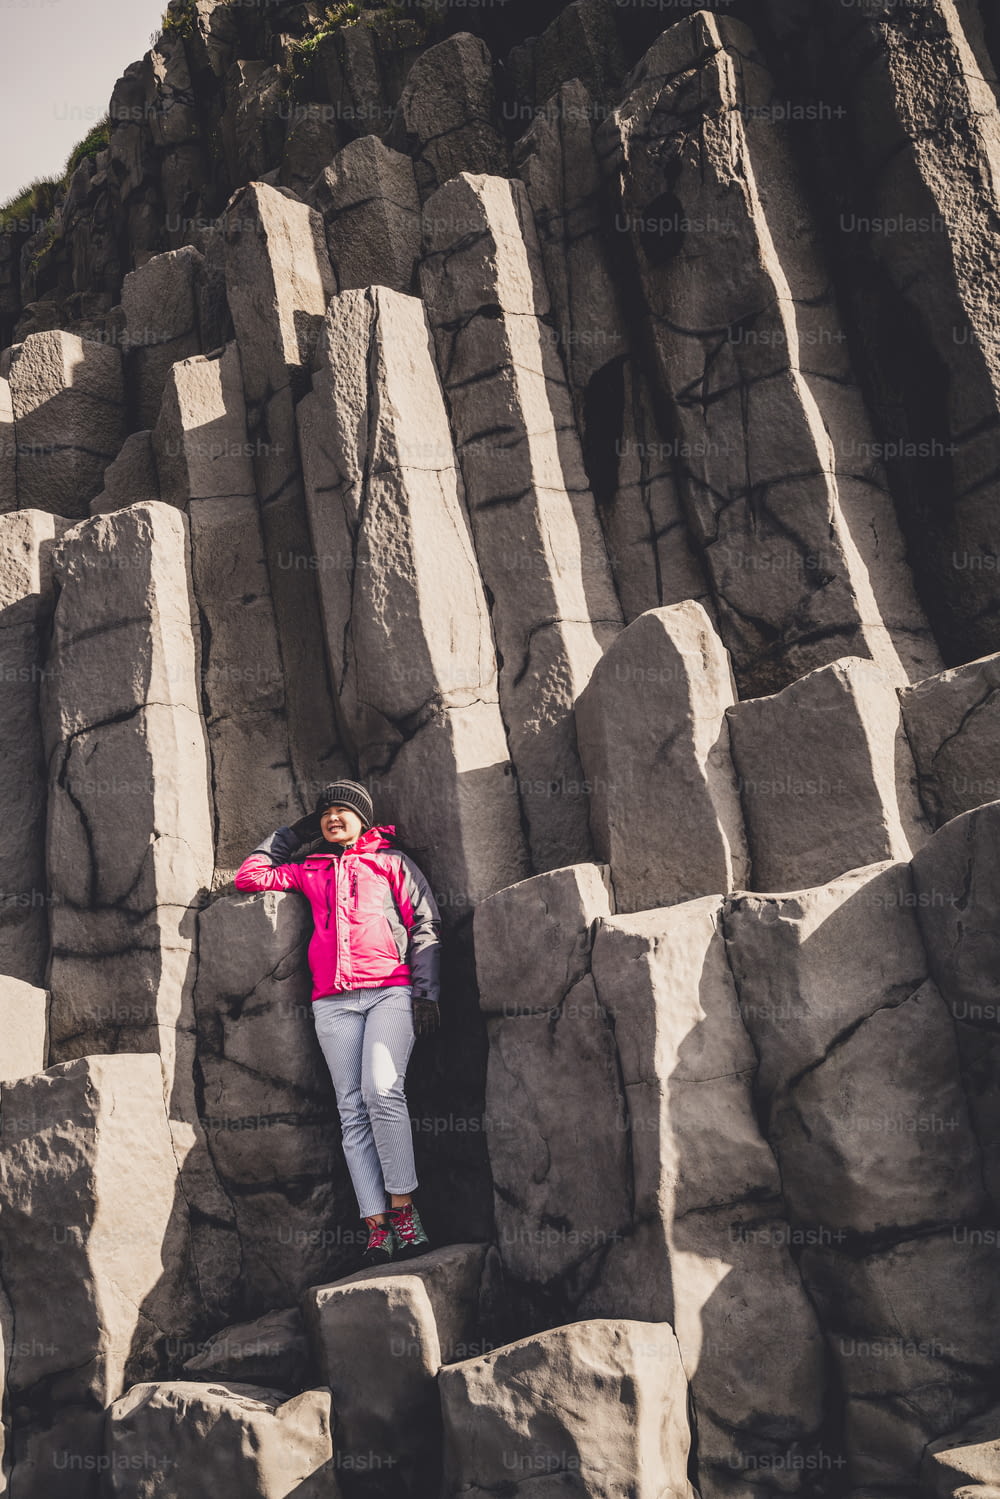 Le voyageur se rend à une formation rocheuse volcanique unique sur la plage de sable noir d’Islande située près du village de Vik i myrdalin, dans le sud de l’Islande. Les rochers colonnaires hexagonaux attirent les touristes qui visitent l’Islande.